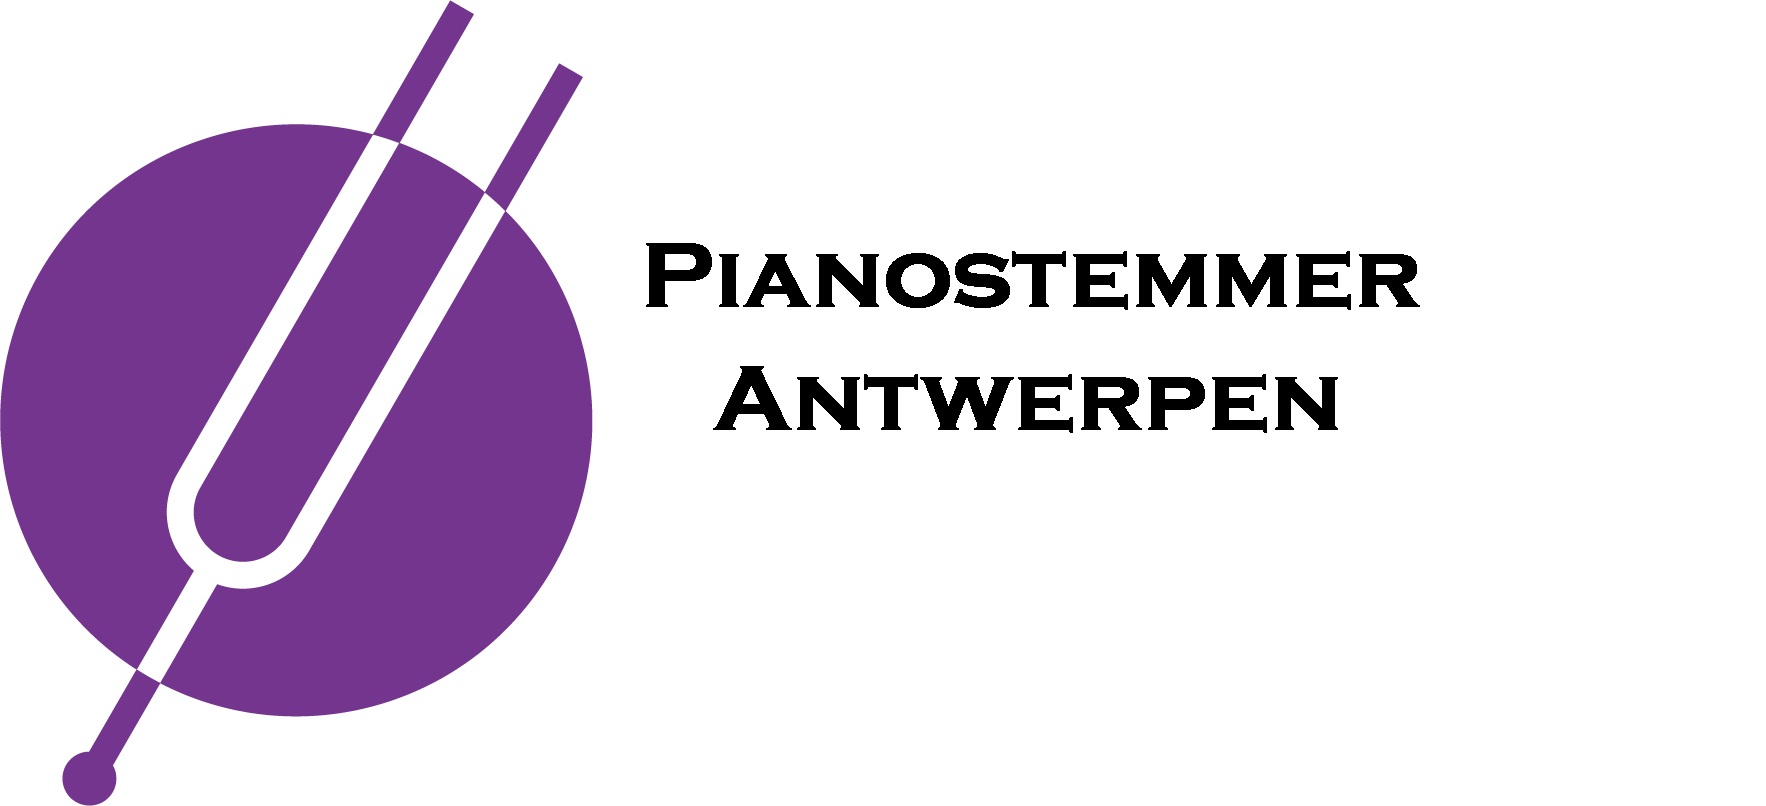 Pianostemmer Antwerpen